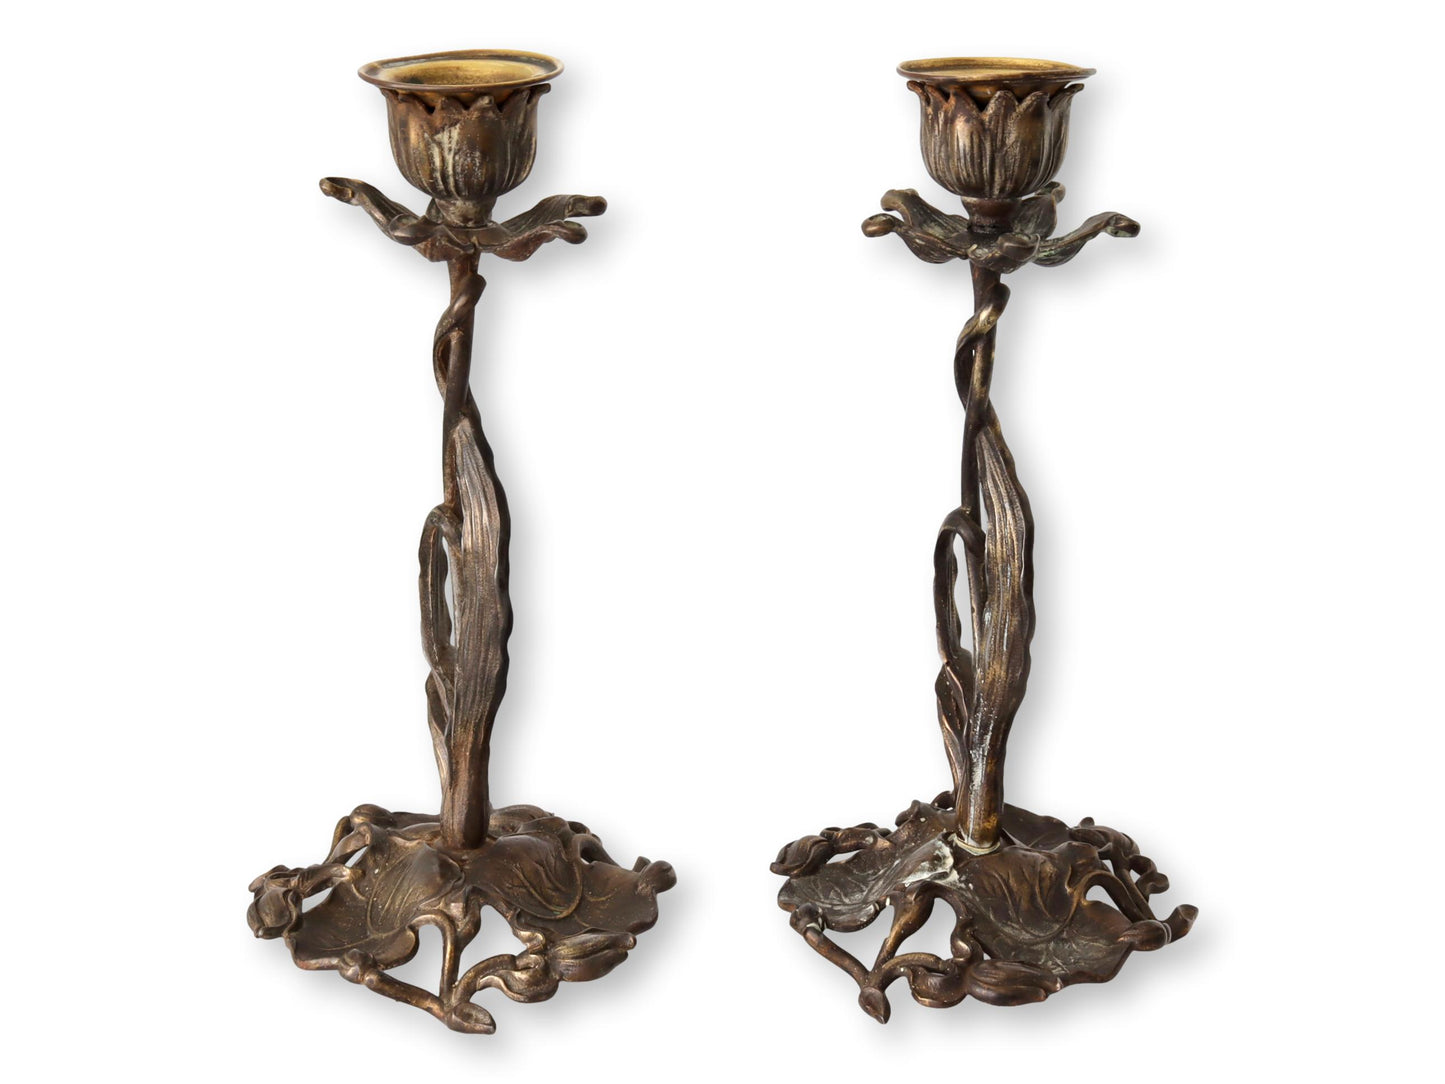 French Art Nouveau Candlesticks "La Belle Epoque"